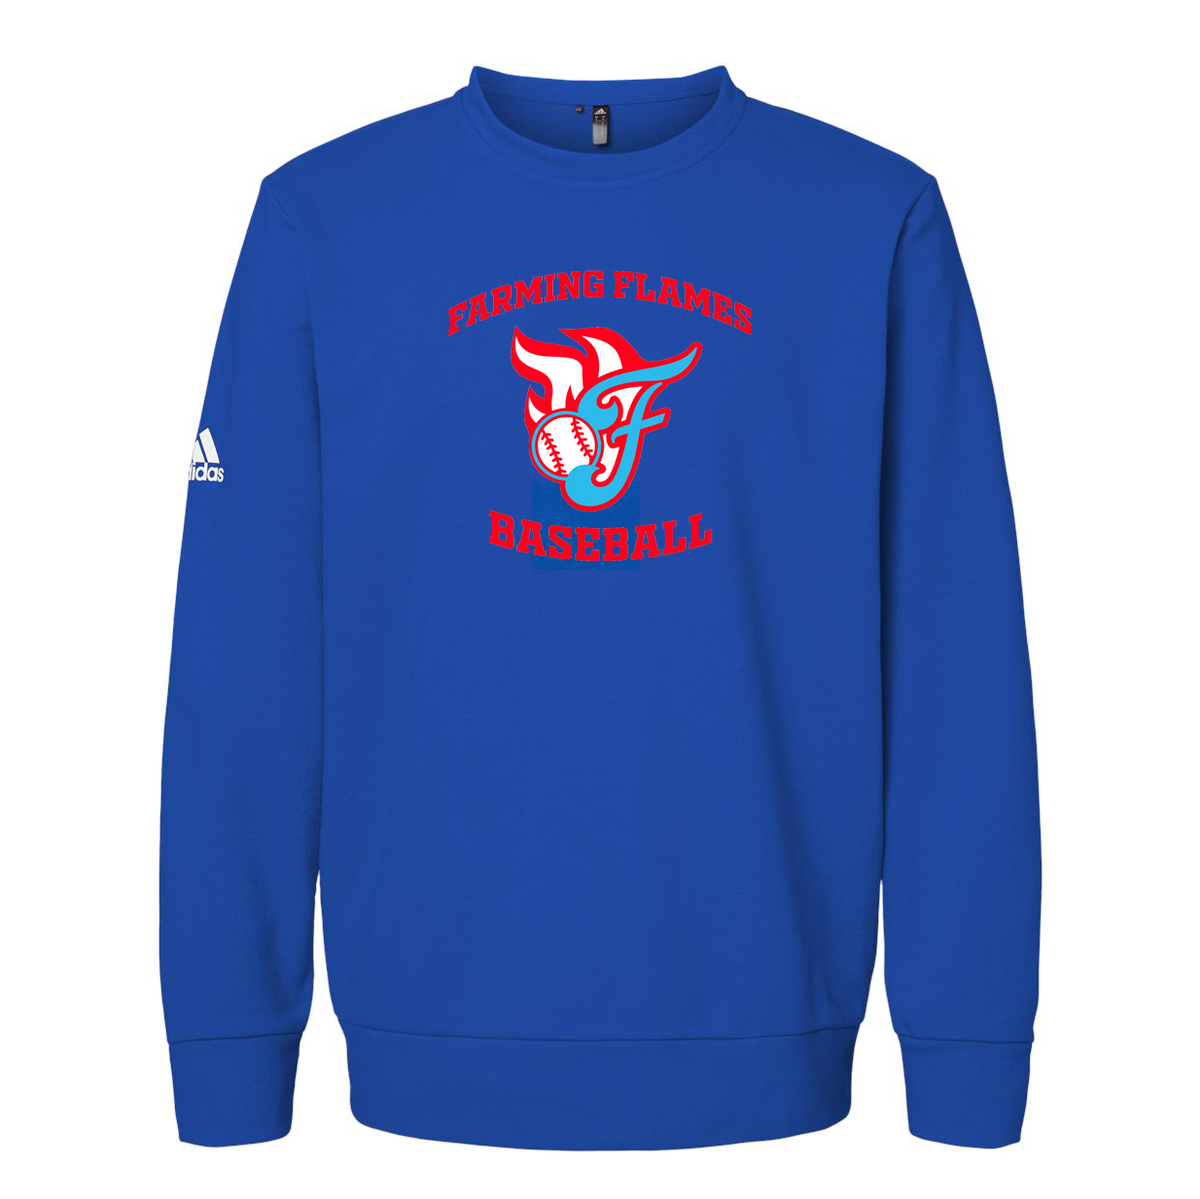 Farming Flames Baseball Club Adidas Fleece Crewneck Sweatshirt